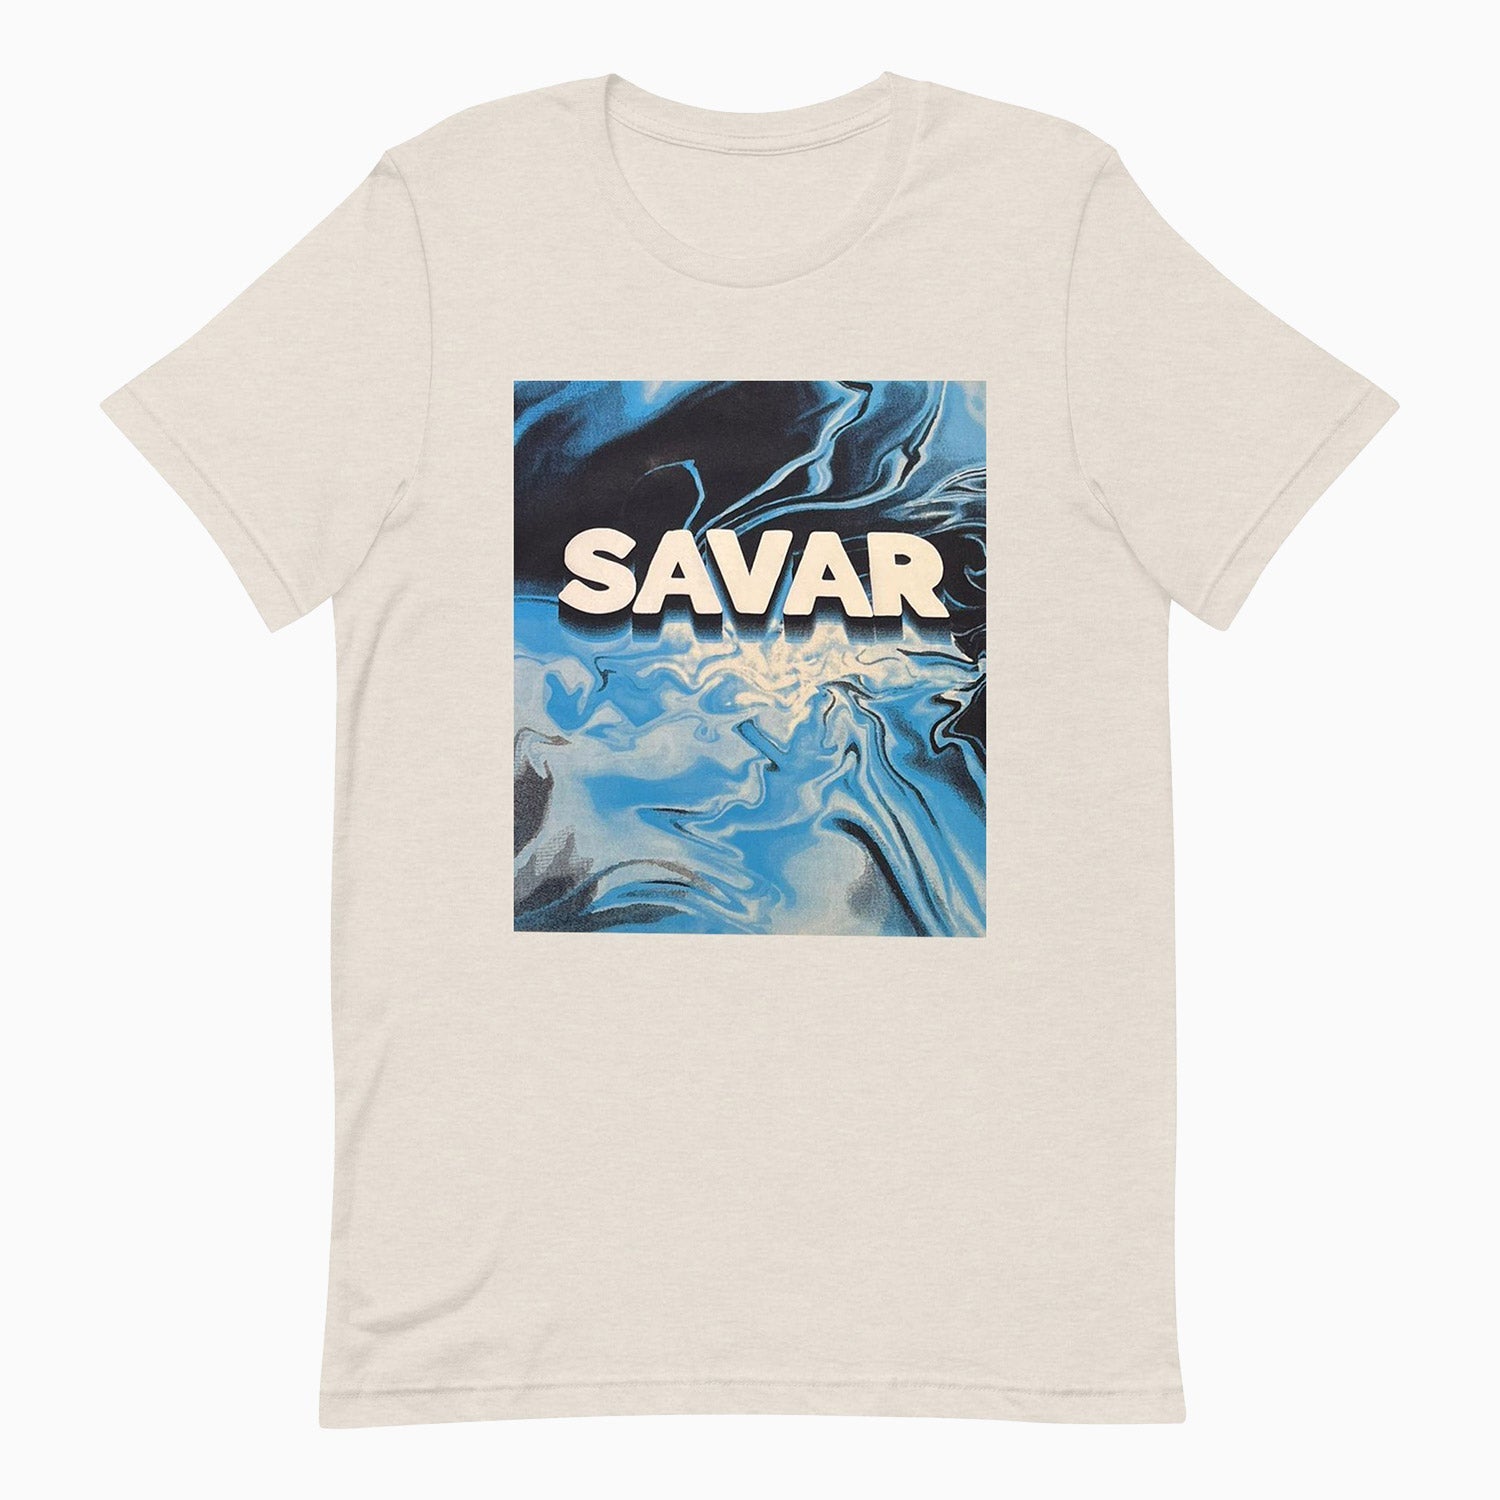 savar-mens-mosaic-printed-off-white-short-sleeves-t-shirt-st202-611